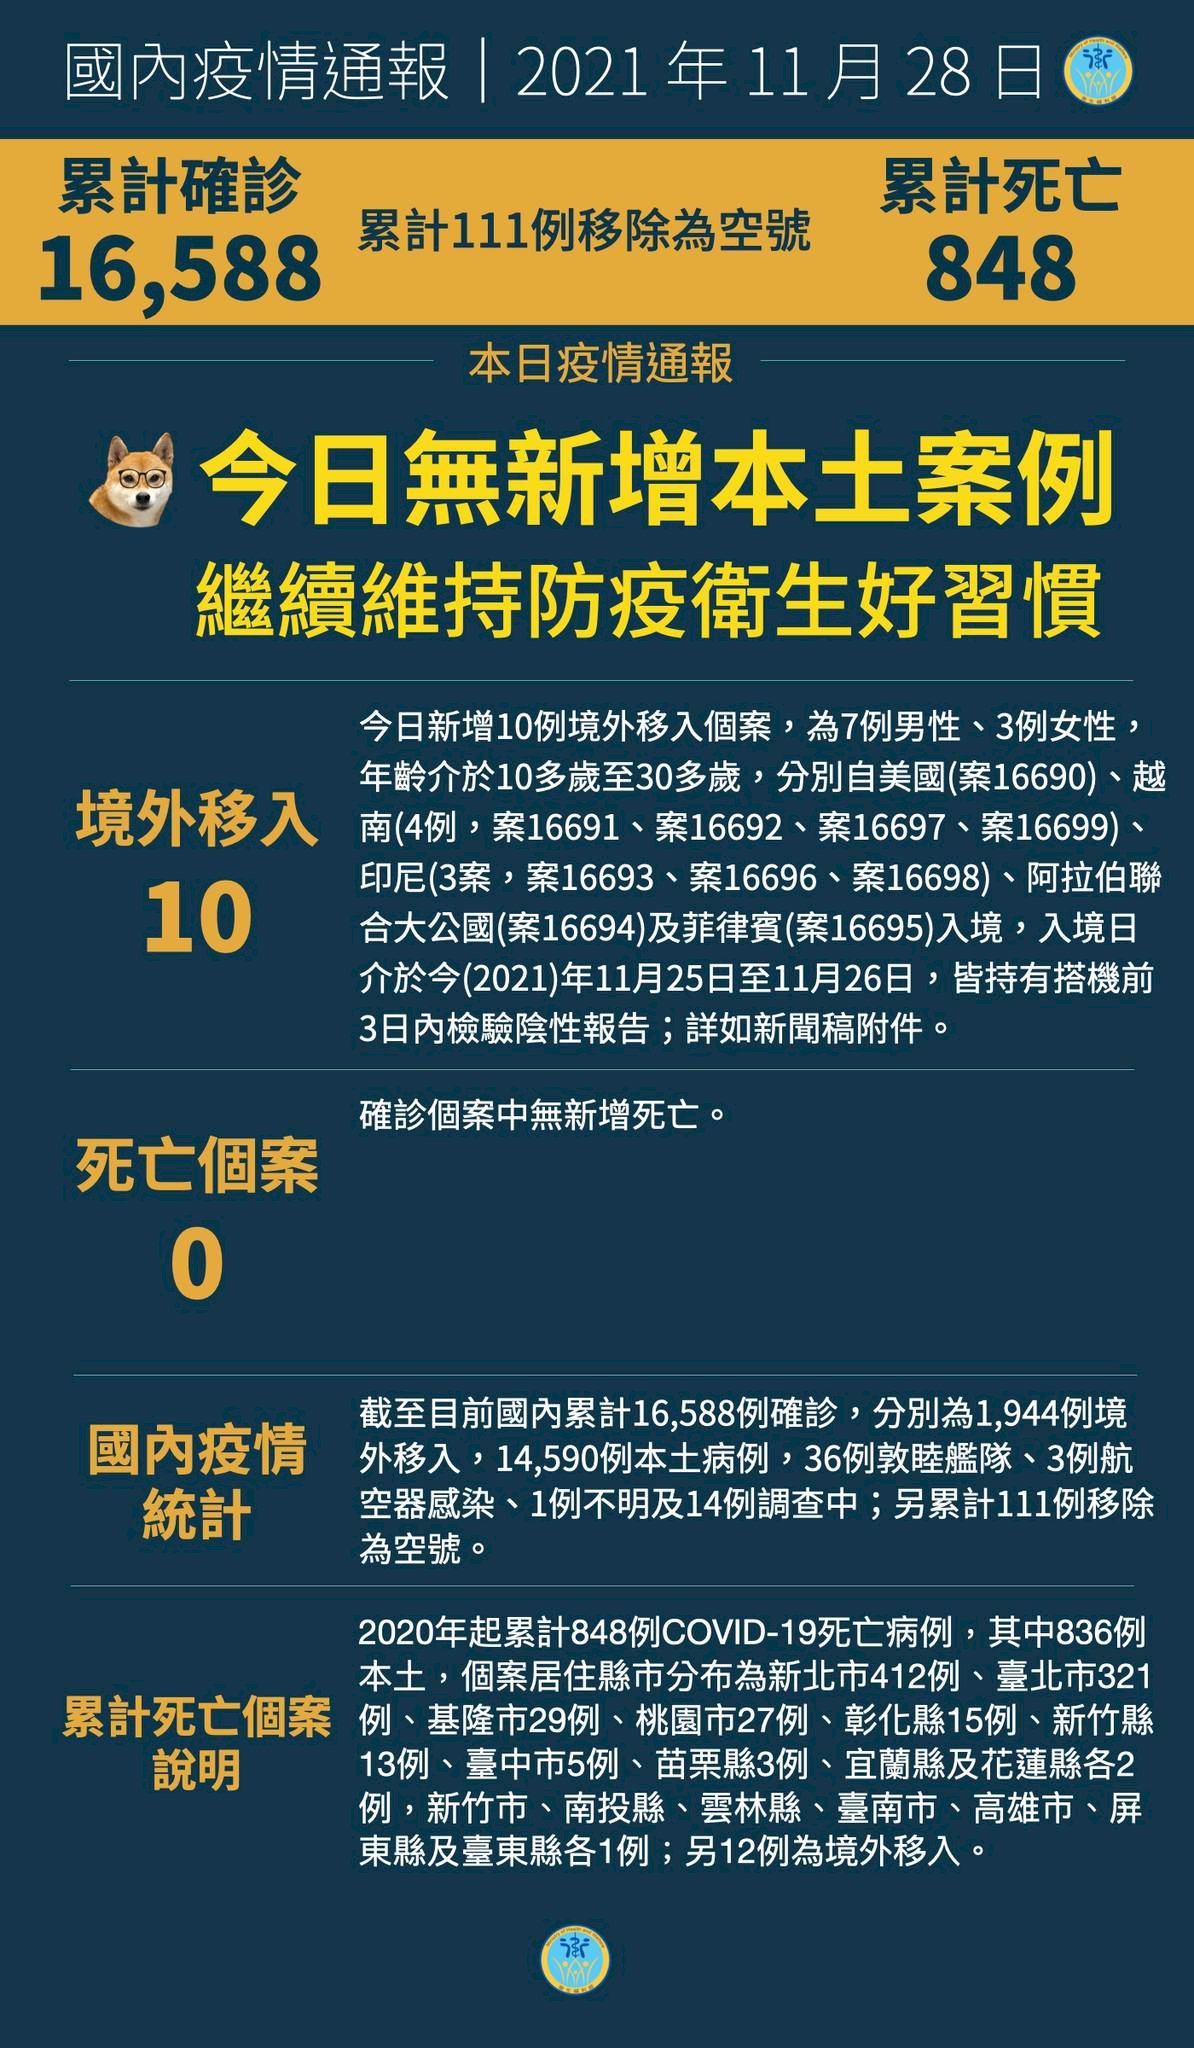 28/11, Đài Loan ghi nhập thêm 10 ca nhiễm COVID-19 từ nước ngoài, có 3 trường hợp lây nhiễm đột phá